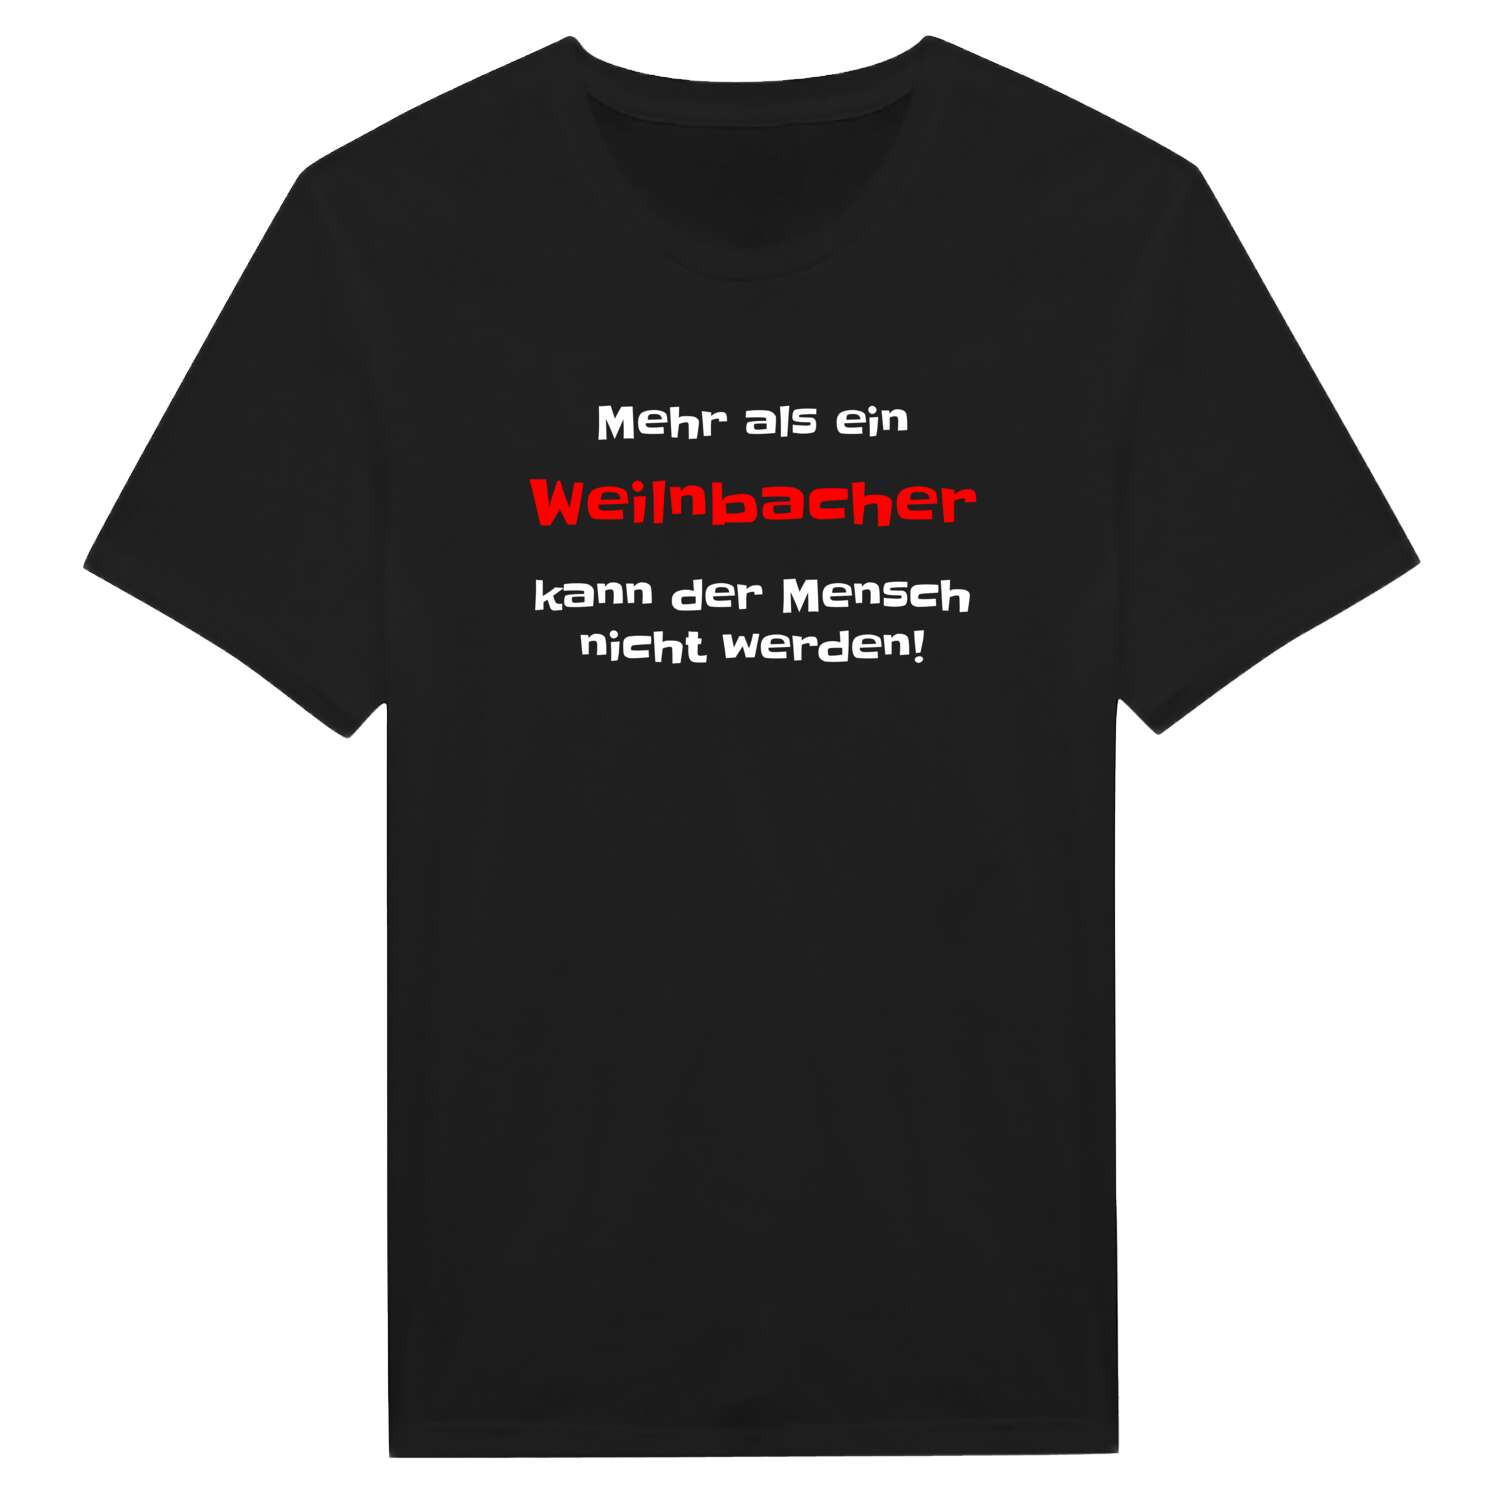 Weilnbach T-Shirt »Mehr als ein«